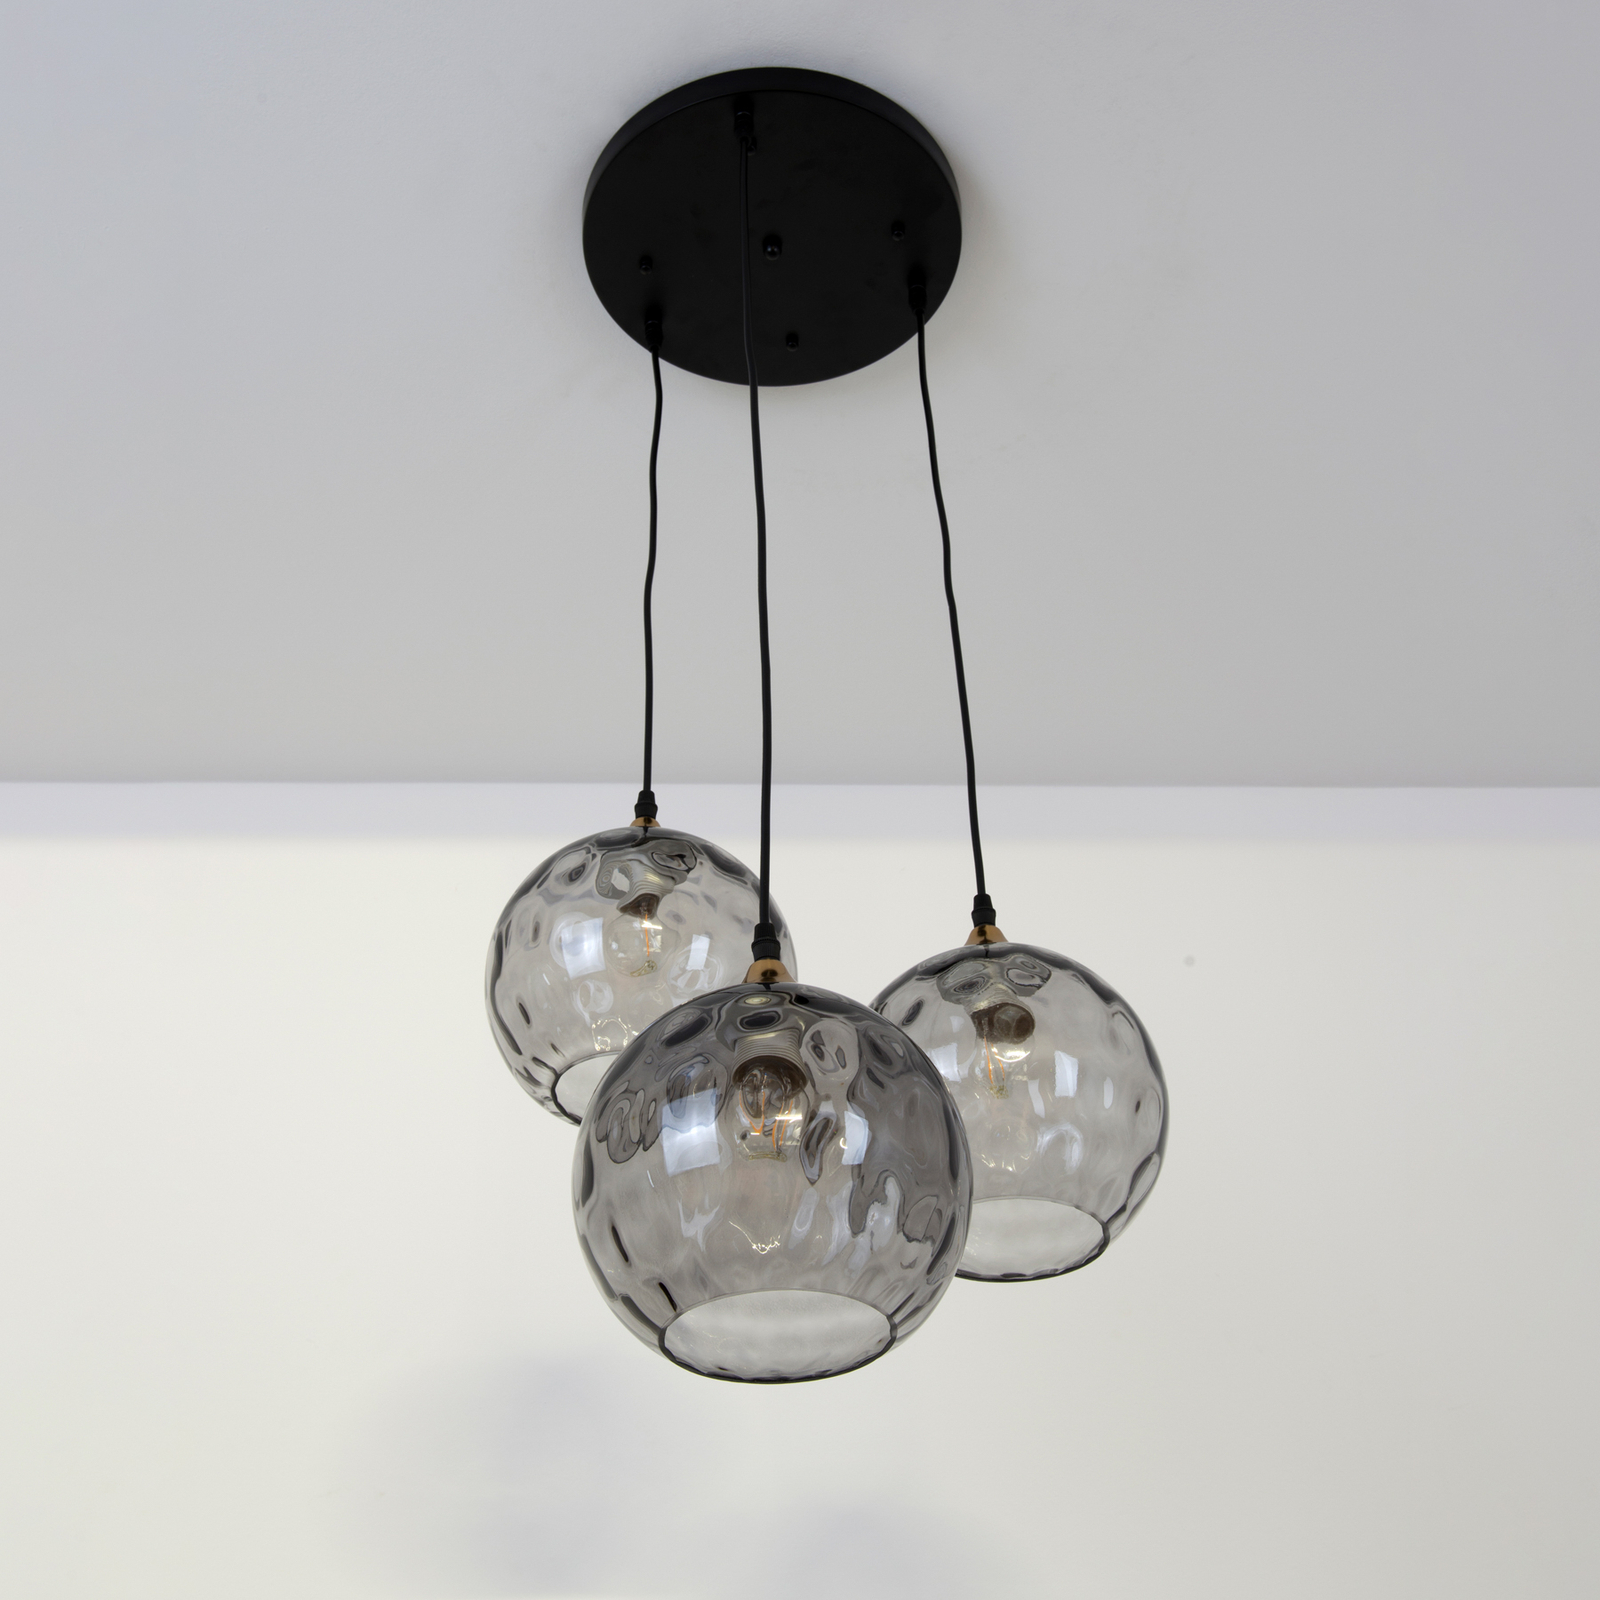 Hanglamp Milano, drie kappen van rookglas